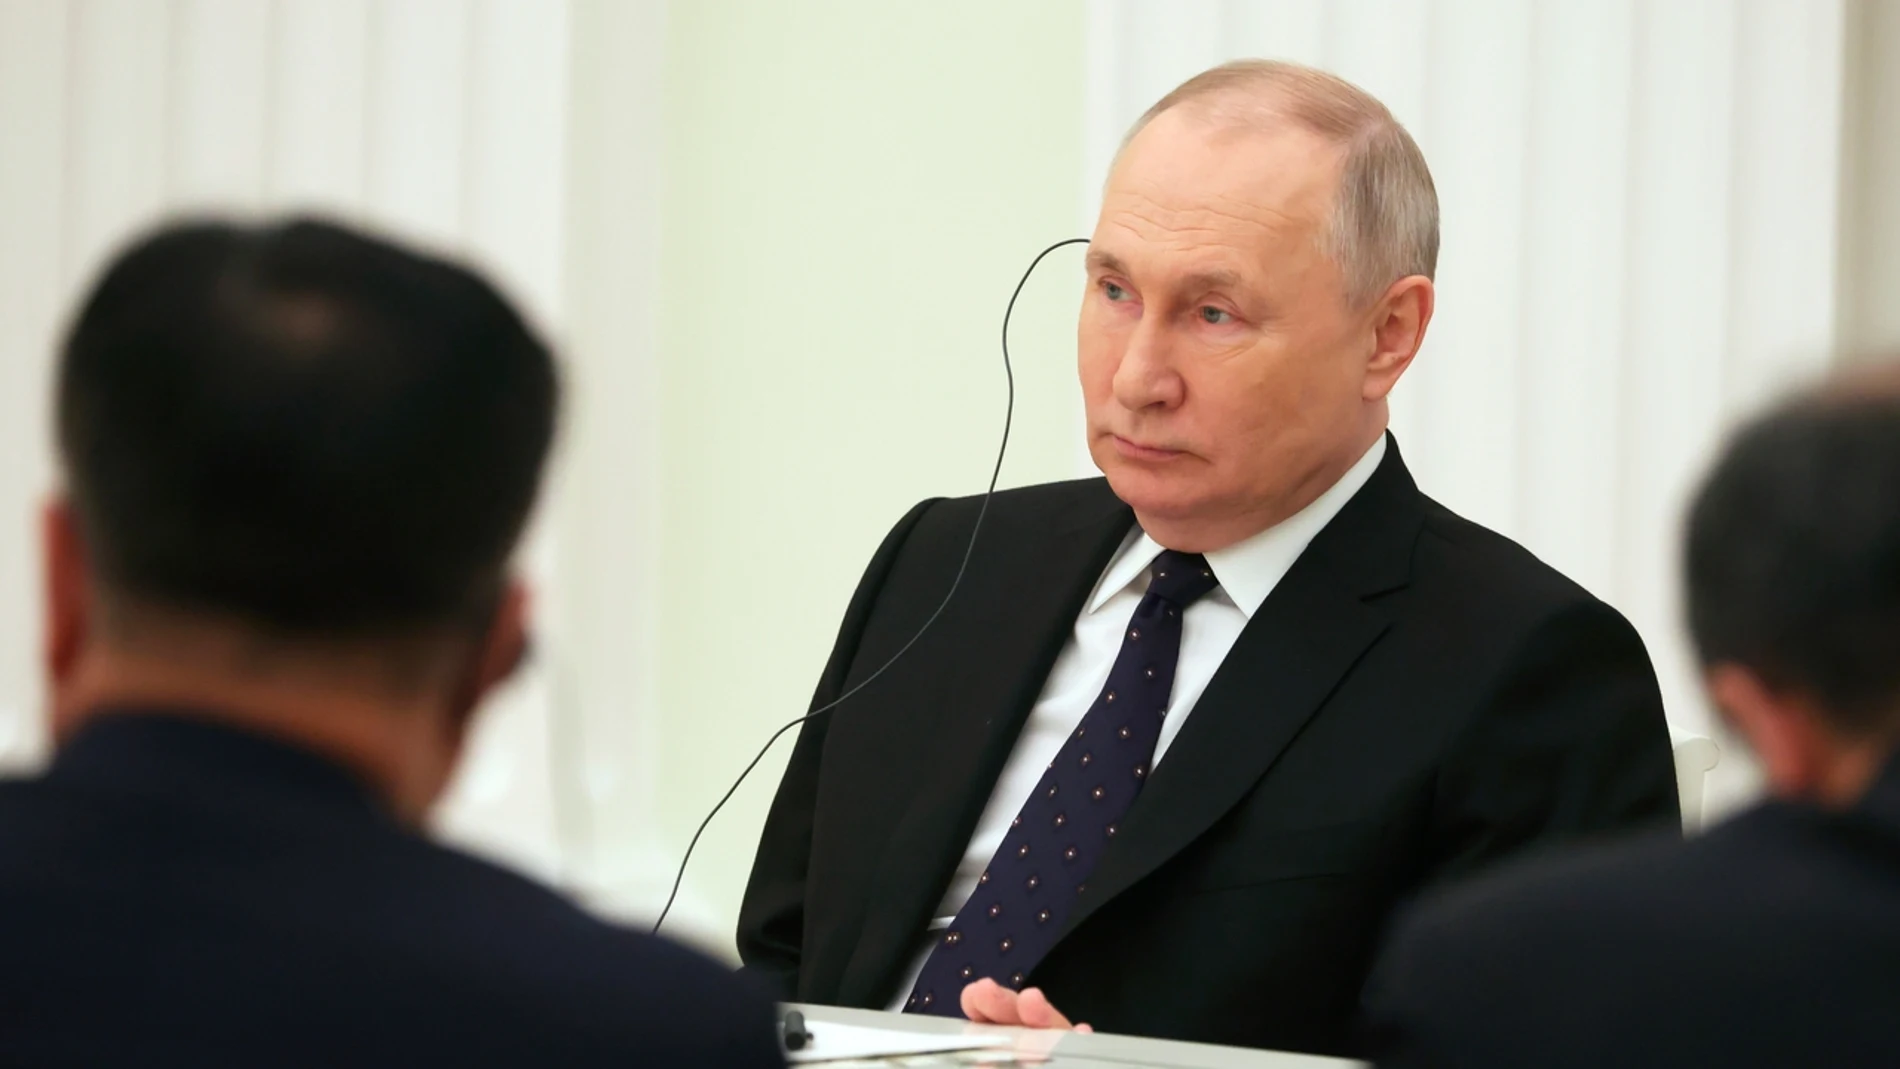 La "tranquilidad" de Putin pese a su orden de arresto: Rusia no pertenece a la Corte Penal Internacional